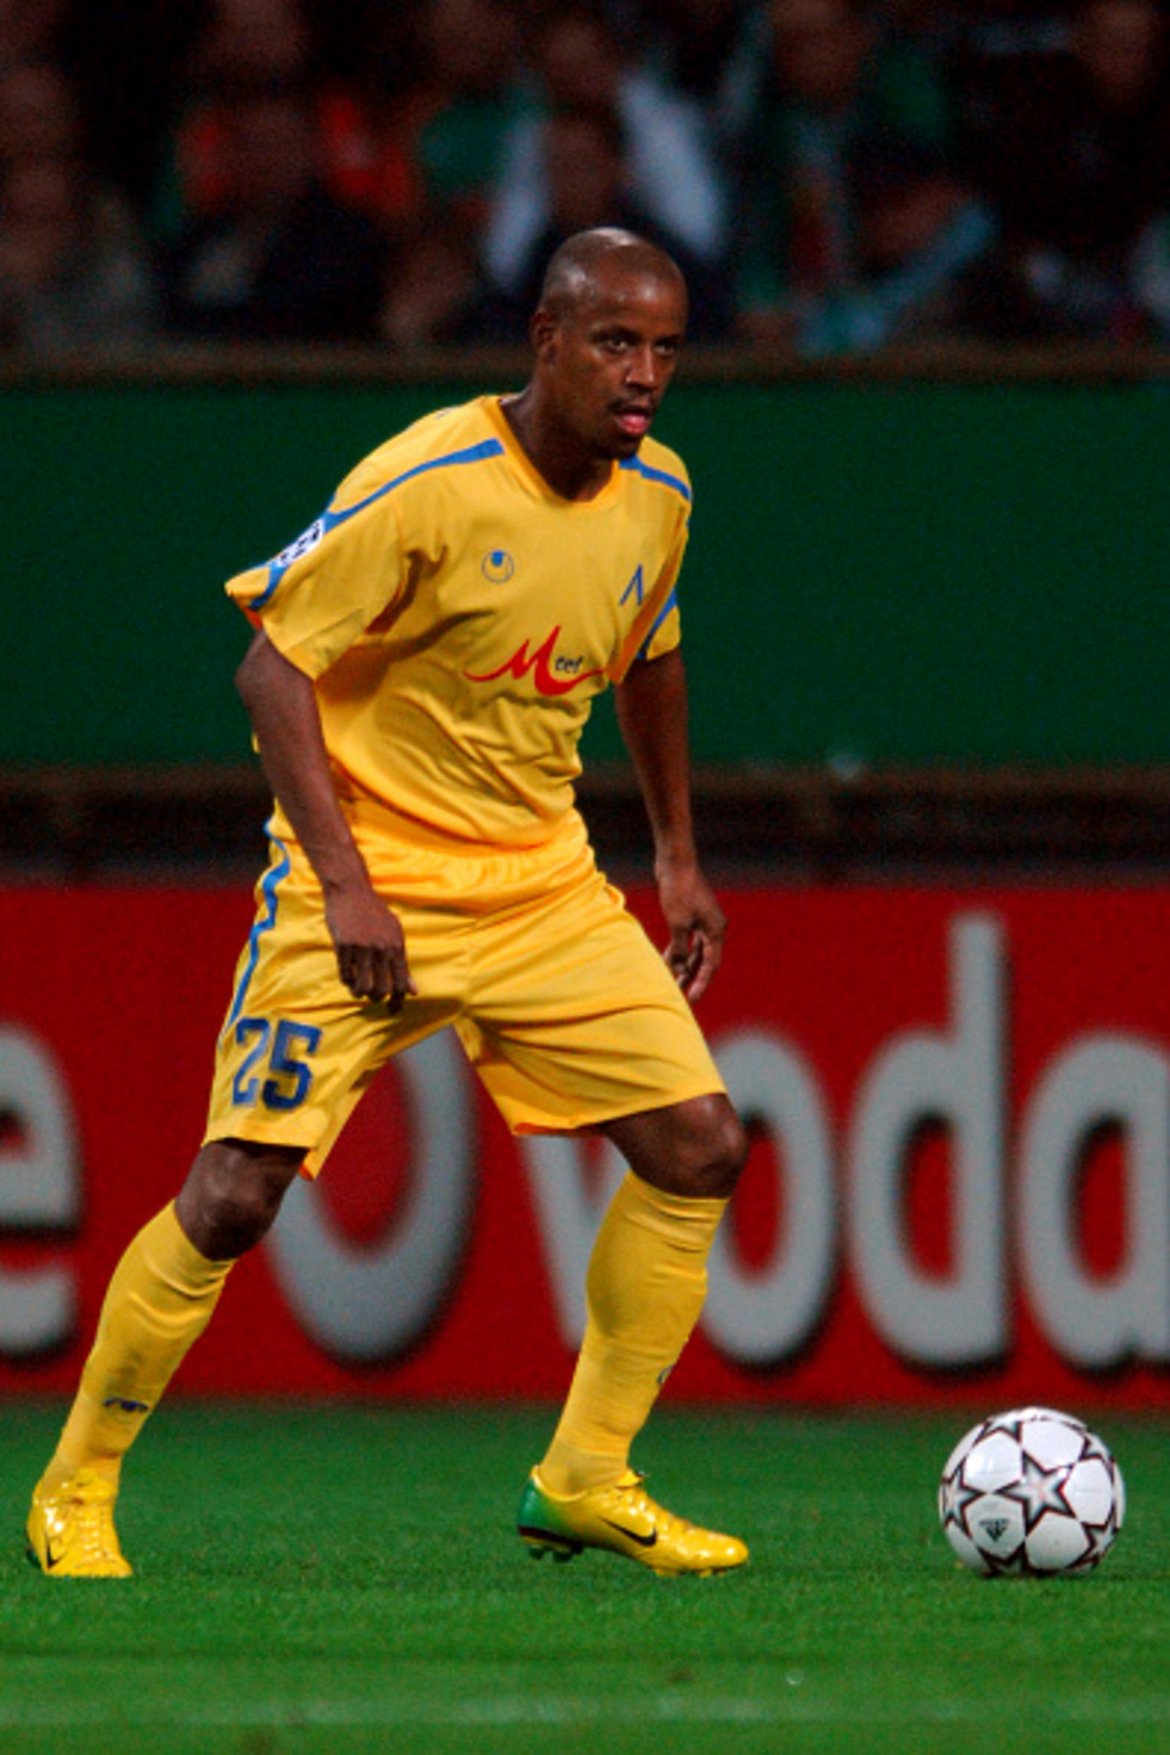 Ляв бек: Лусио Вагнер
Бразилската перла в селекцията на „сините“ от онова време остава един от най-класните чуждестранни футболисти, играли в родния елит. Има и 10 мача за националния отбор. На 23 август 2006-а си изкара втори жълт картон в продължението срещу Киево, когато всичко вече бе решено, и в резултат изпусна дебюта на тима в групите. През 2010-а реши да прекрати кариерата си в Левски, където прекара последните 9 години от нея. След това се върна в родната Бразилия, където основа собствен клуб с името на Апостола. И днес Лусио Вагнер прекарва пенсията си по бразилските плажове, но Левски винаги остава в сърцето му. С екипа на „сините“ Вагнер изигра 22 мача за Купата на УЕФА и отбеляза 2 гола, а впоследствие бе и твърд титуляр в Шампионската лига.